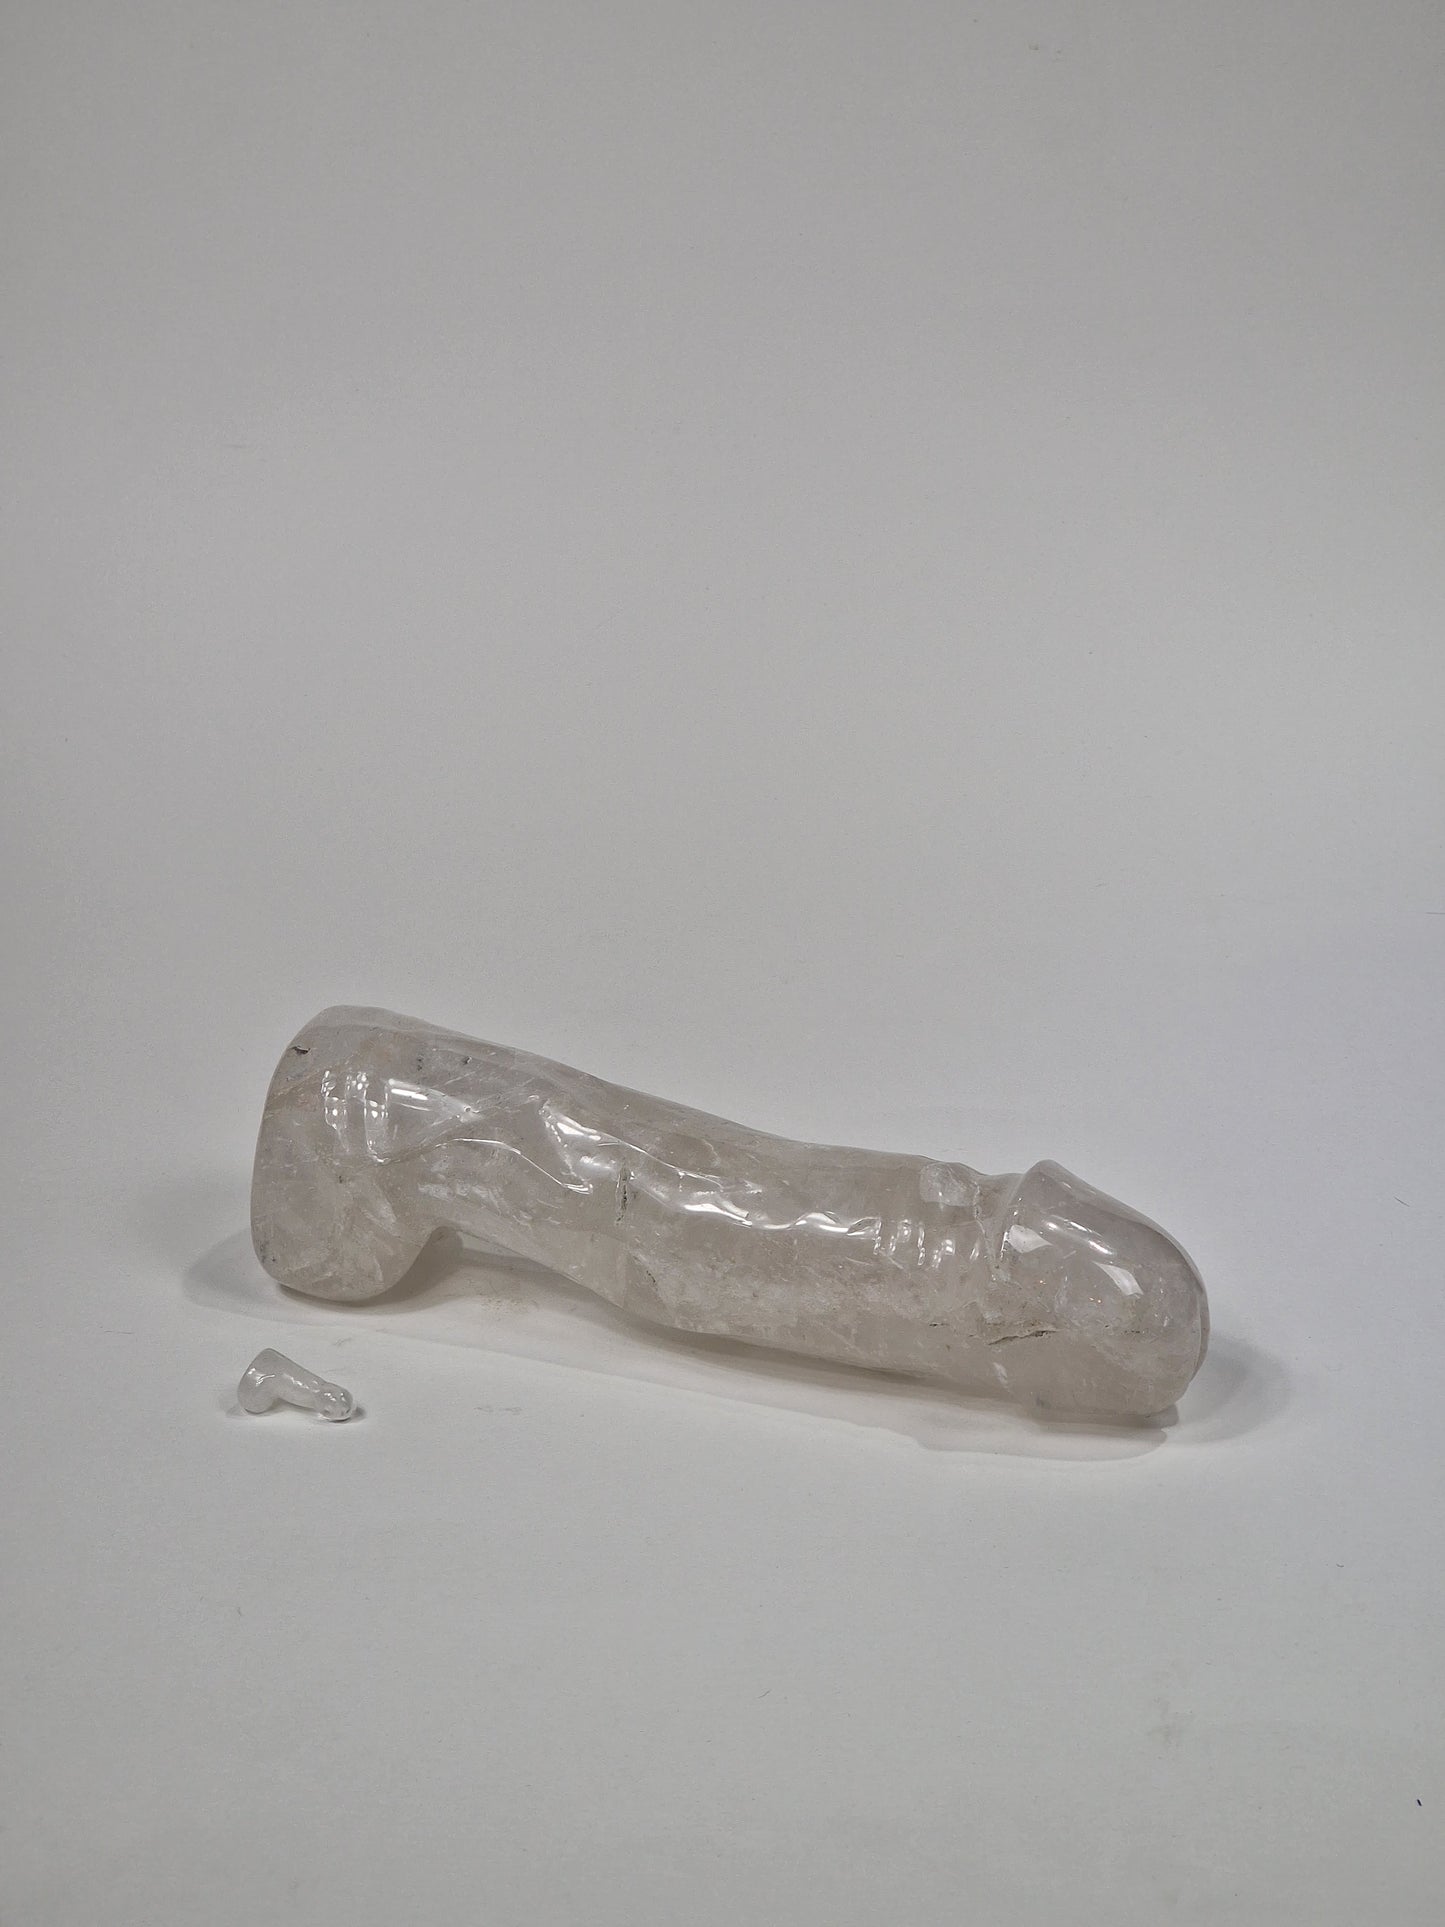 Staty i crystal - 25 cm, 1.5kg clear quartz